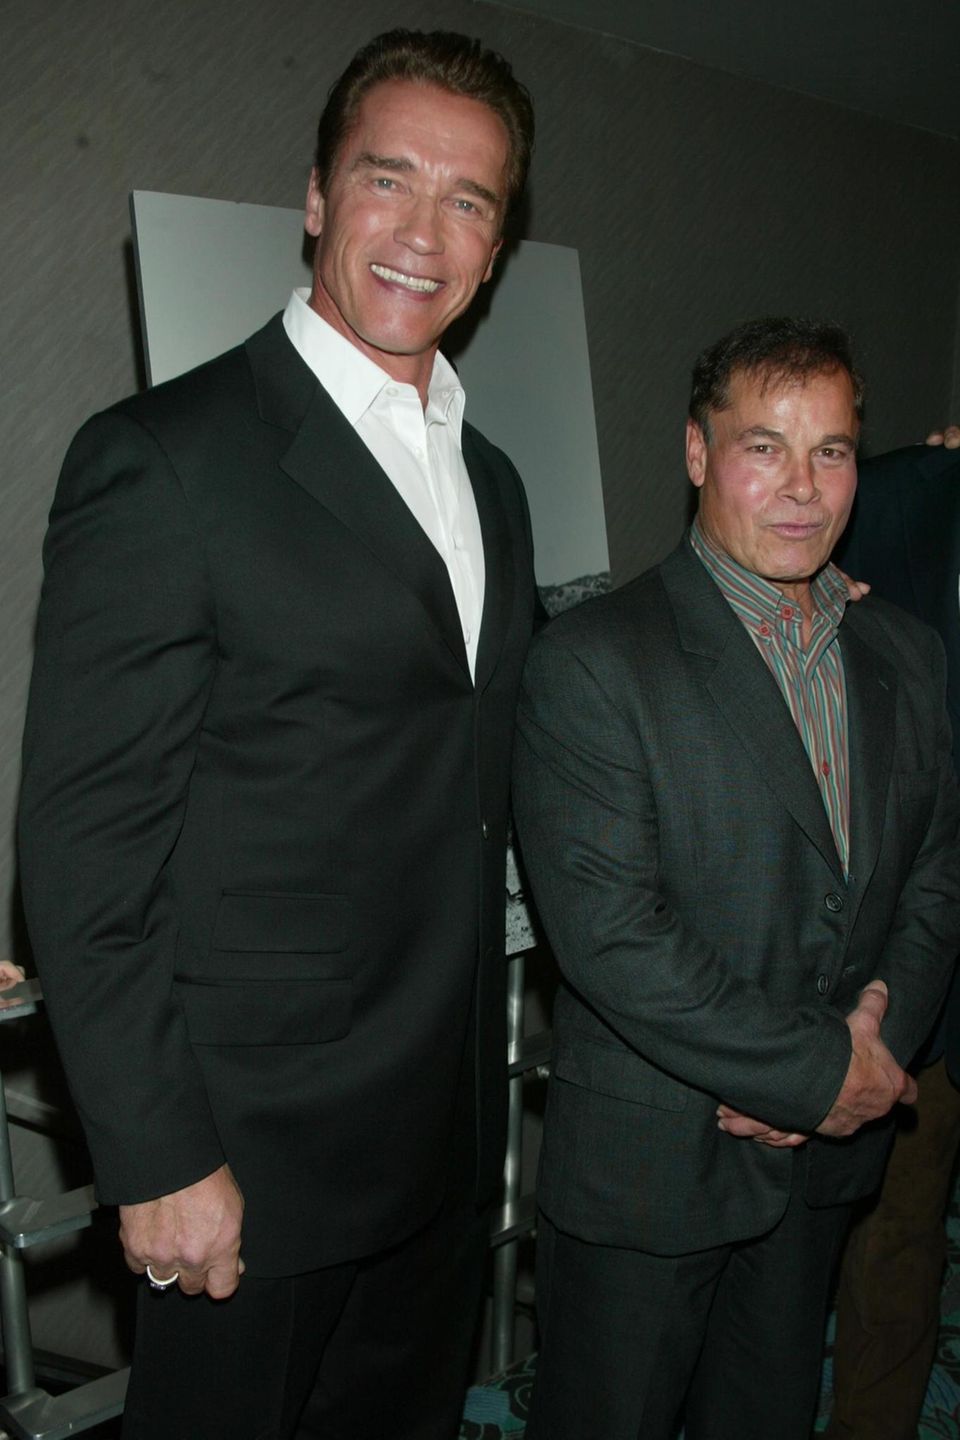 Arnold Schwarzenegger und sein verstorbener Freund Franco Columbu beim 25. Jubiläum der Bodybuilder-Dokumentation "Pumping Iron" in New York im Jahr 2002.